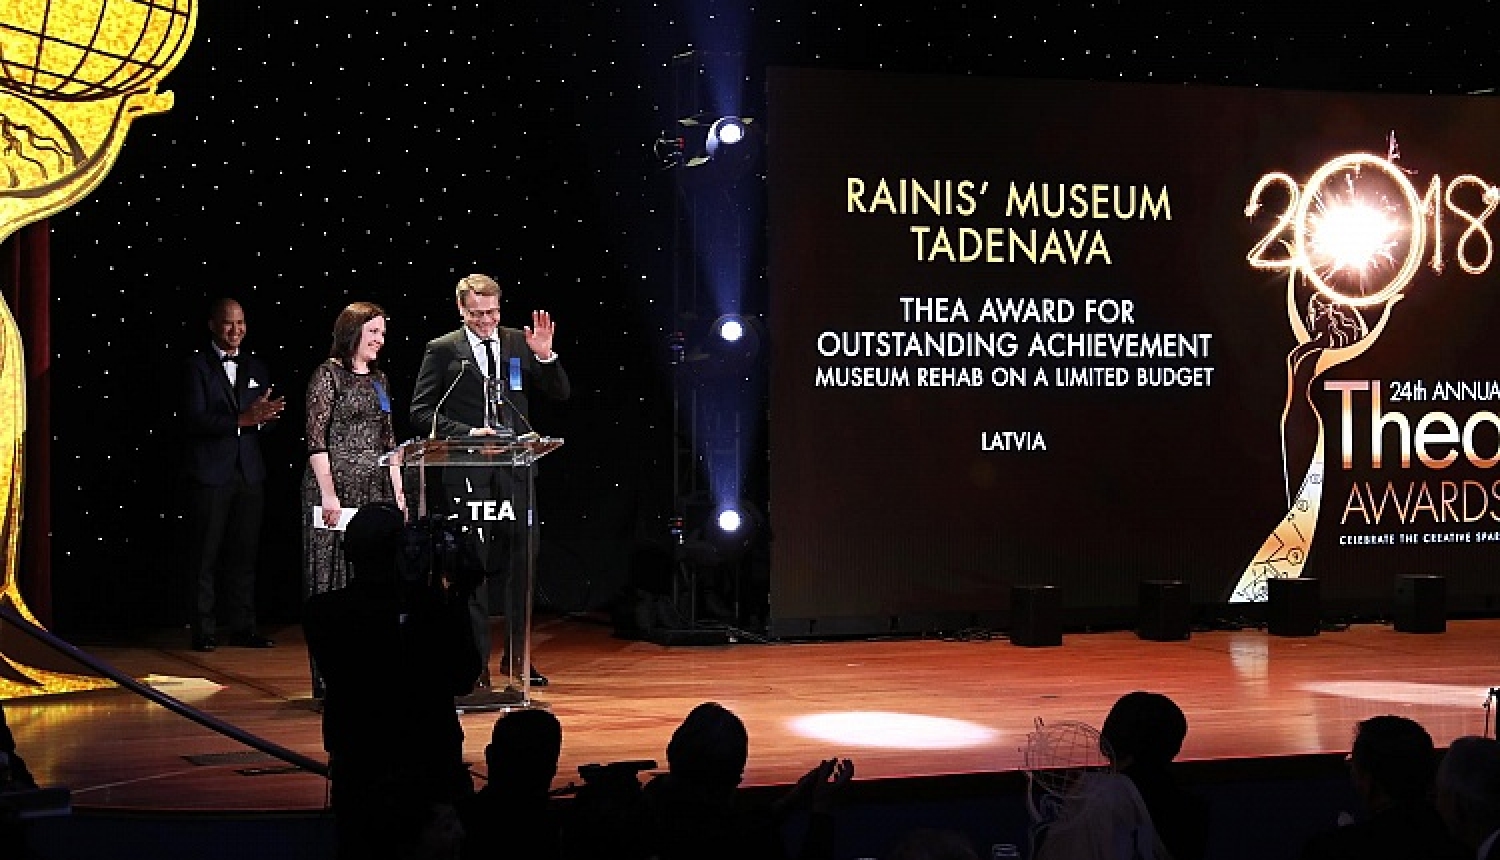 Raiņa muzejam “Tadenava” – starptautiskā THEA balva par izciliem sasniegumiem